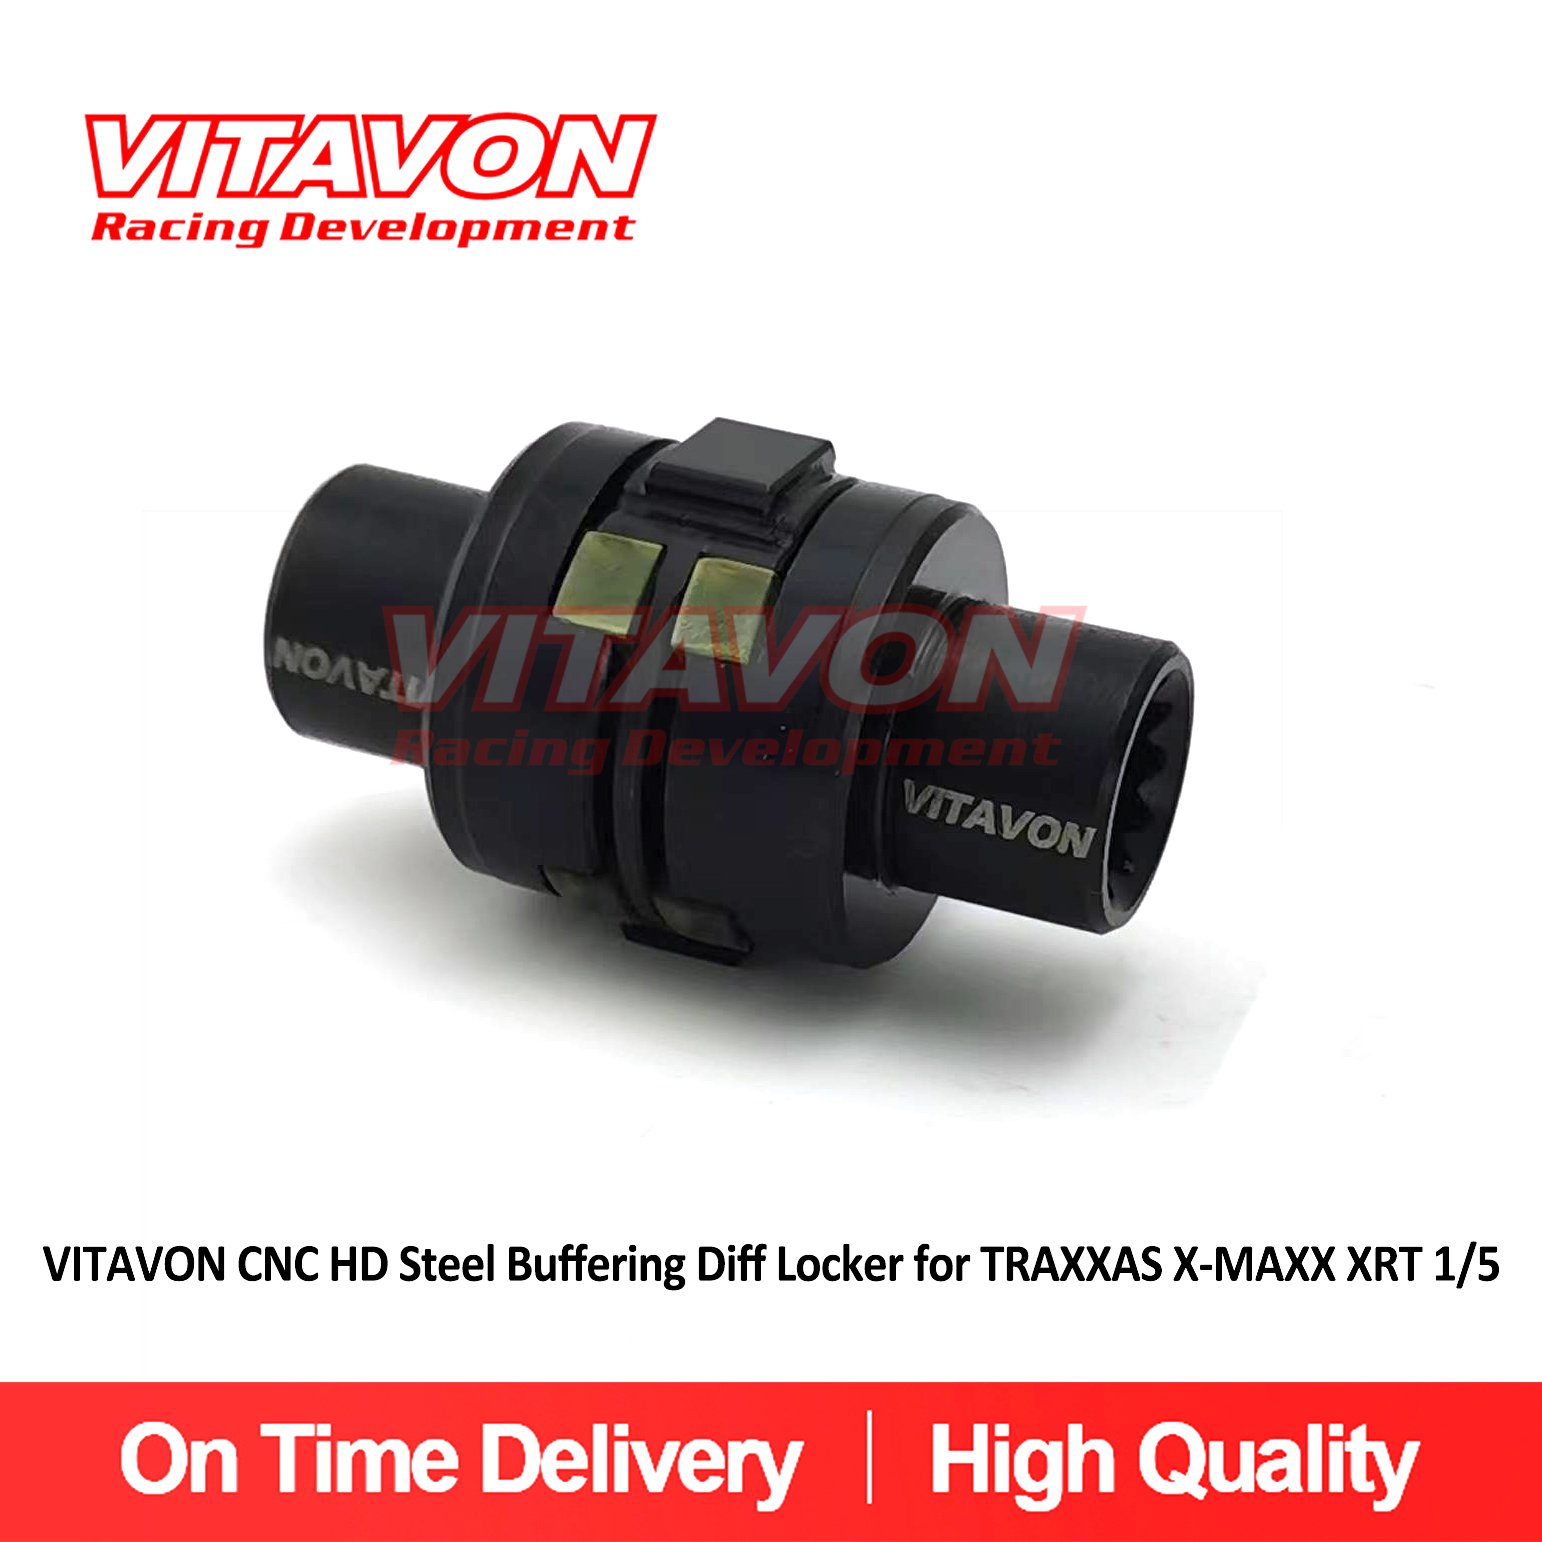 VITAVON CNC HD Steel Buffering Diff Locker for TRAXXAS X-MAXX XRT 1/5